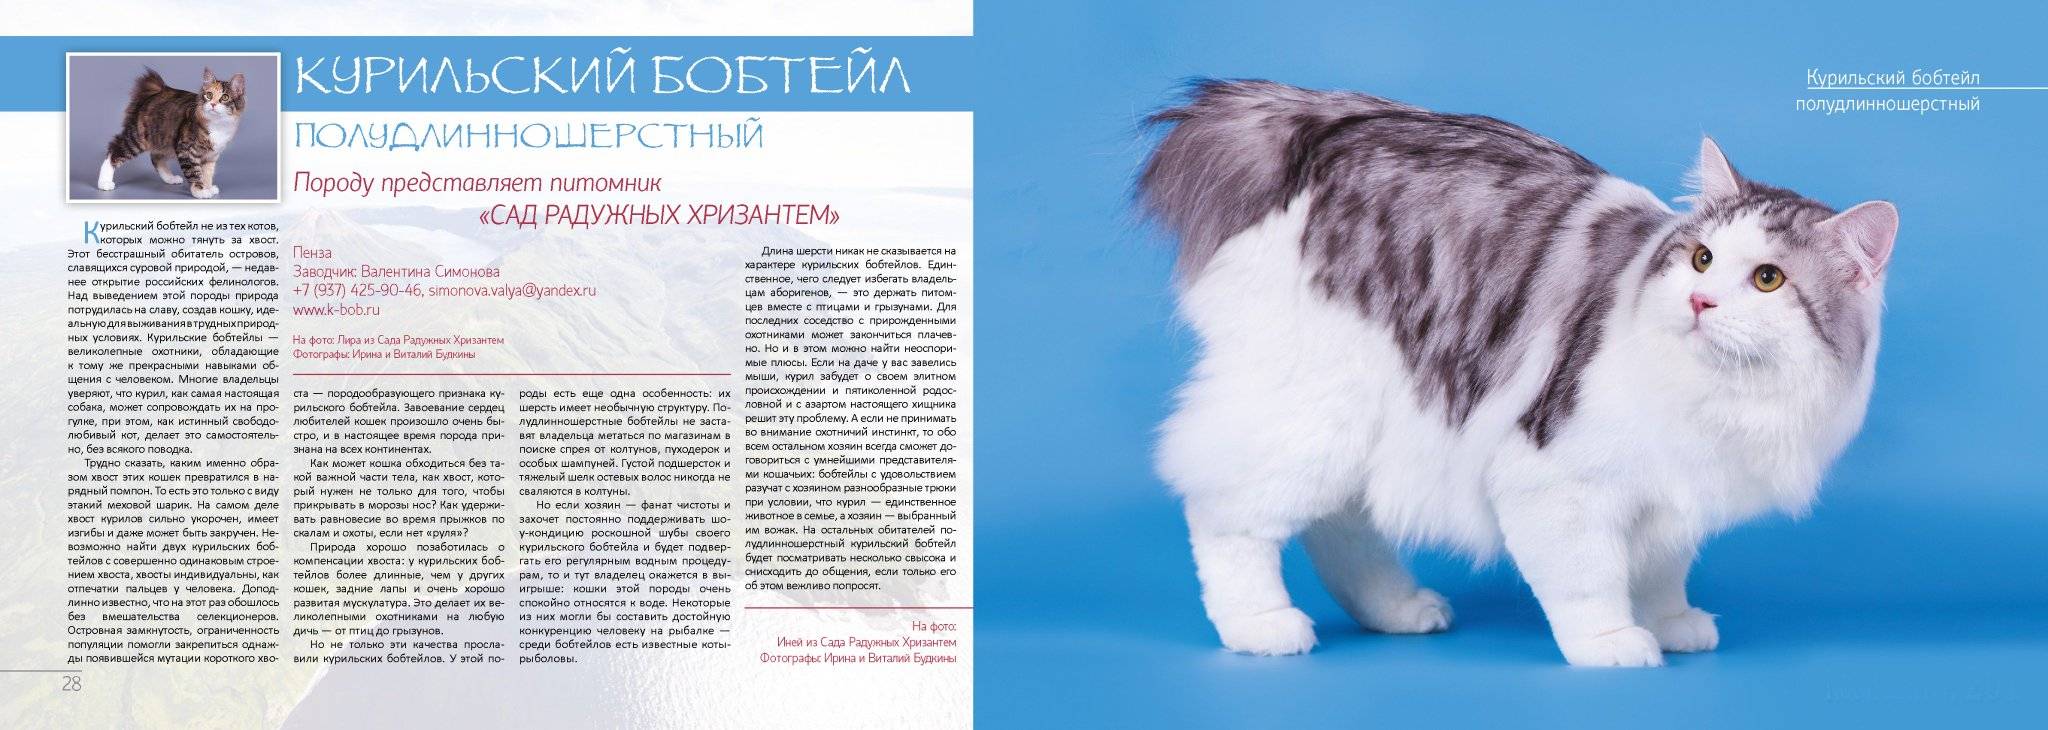 Бобтейл: характеристики породы, фото кошки, как правильно кормить и ухаживать, как выбрать котенка, отзывы владельцев кота